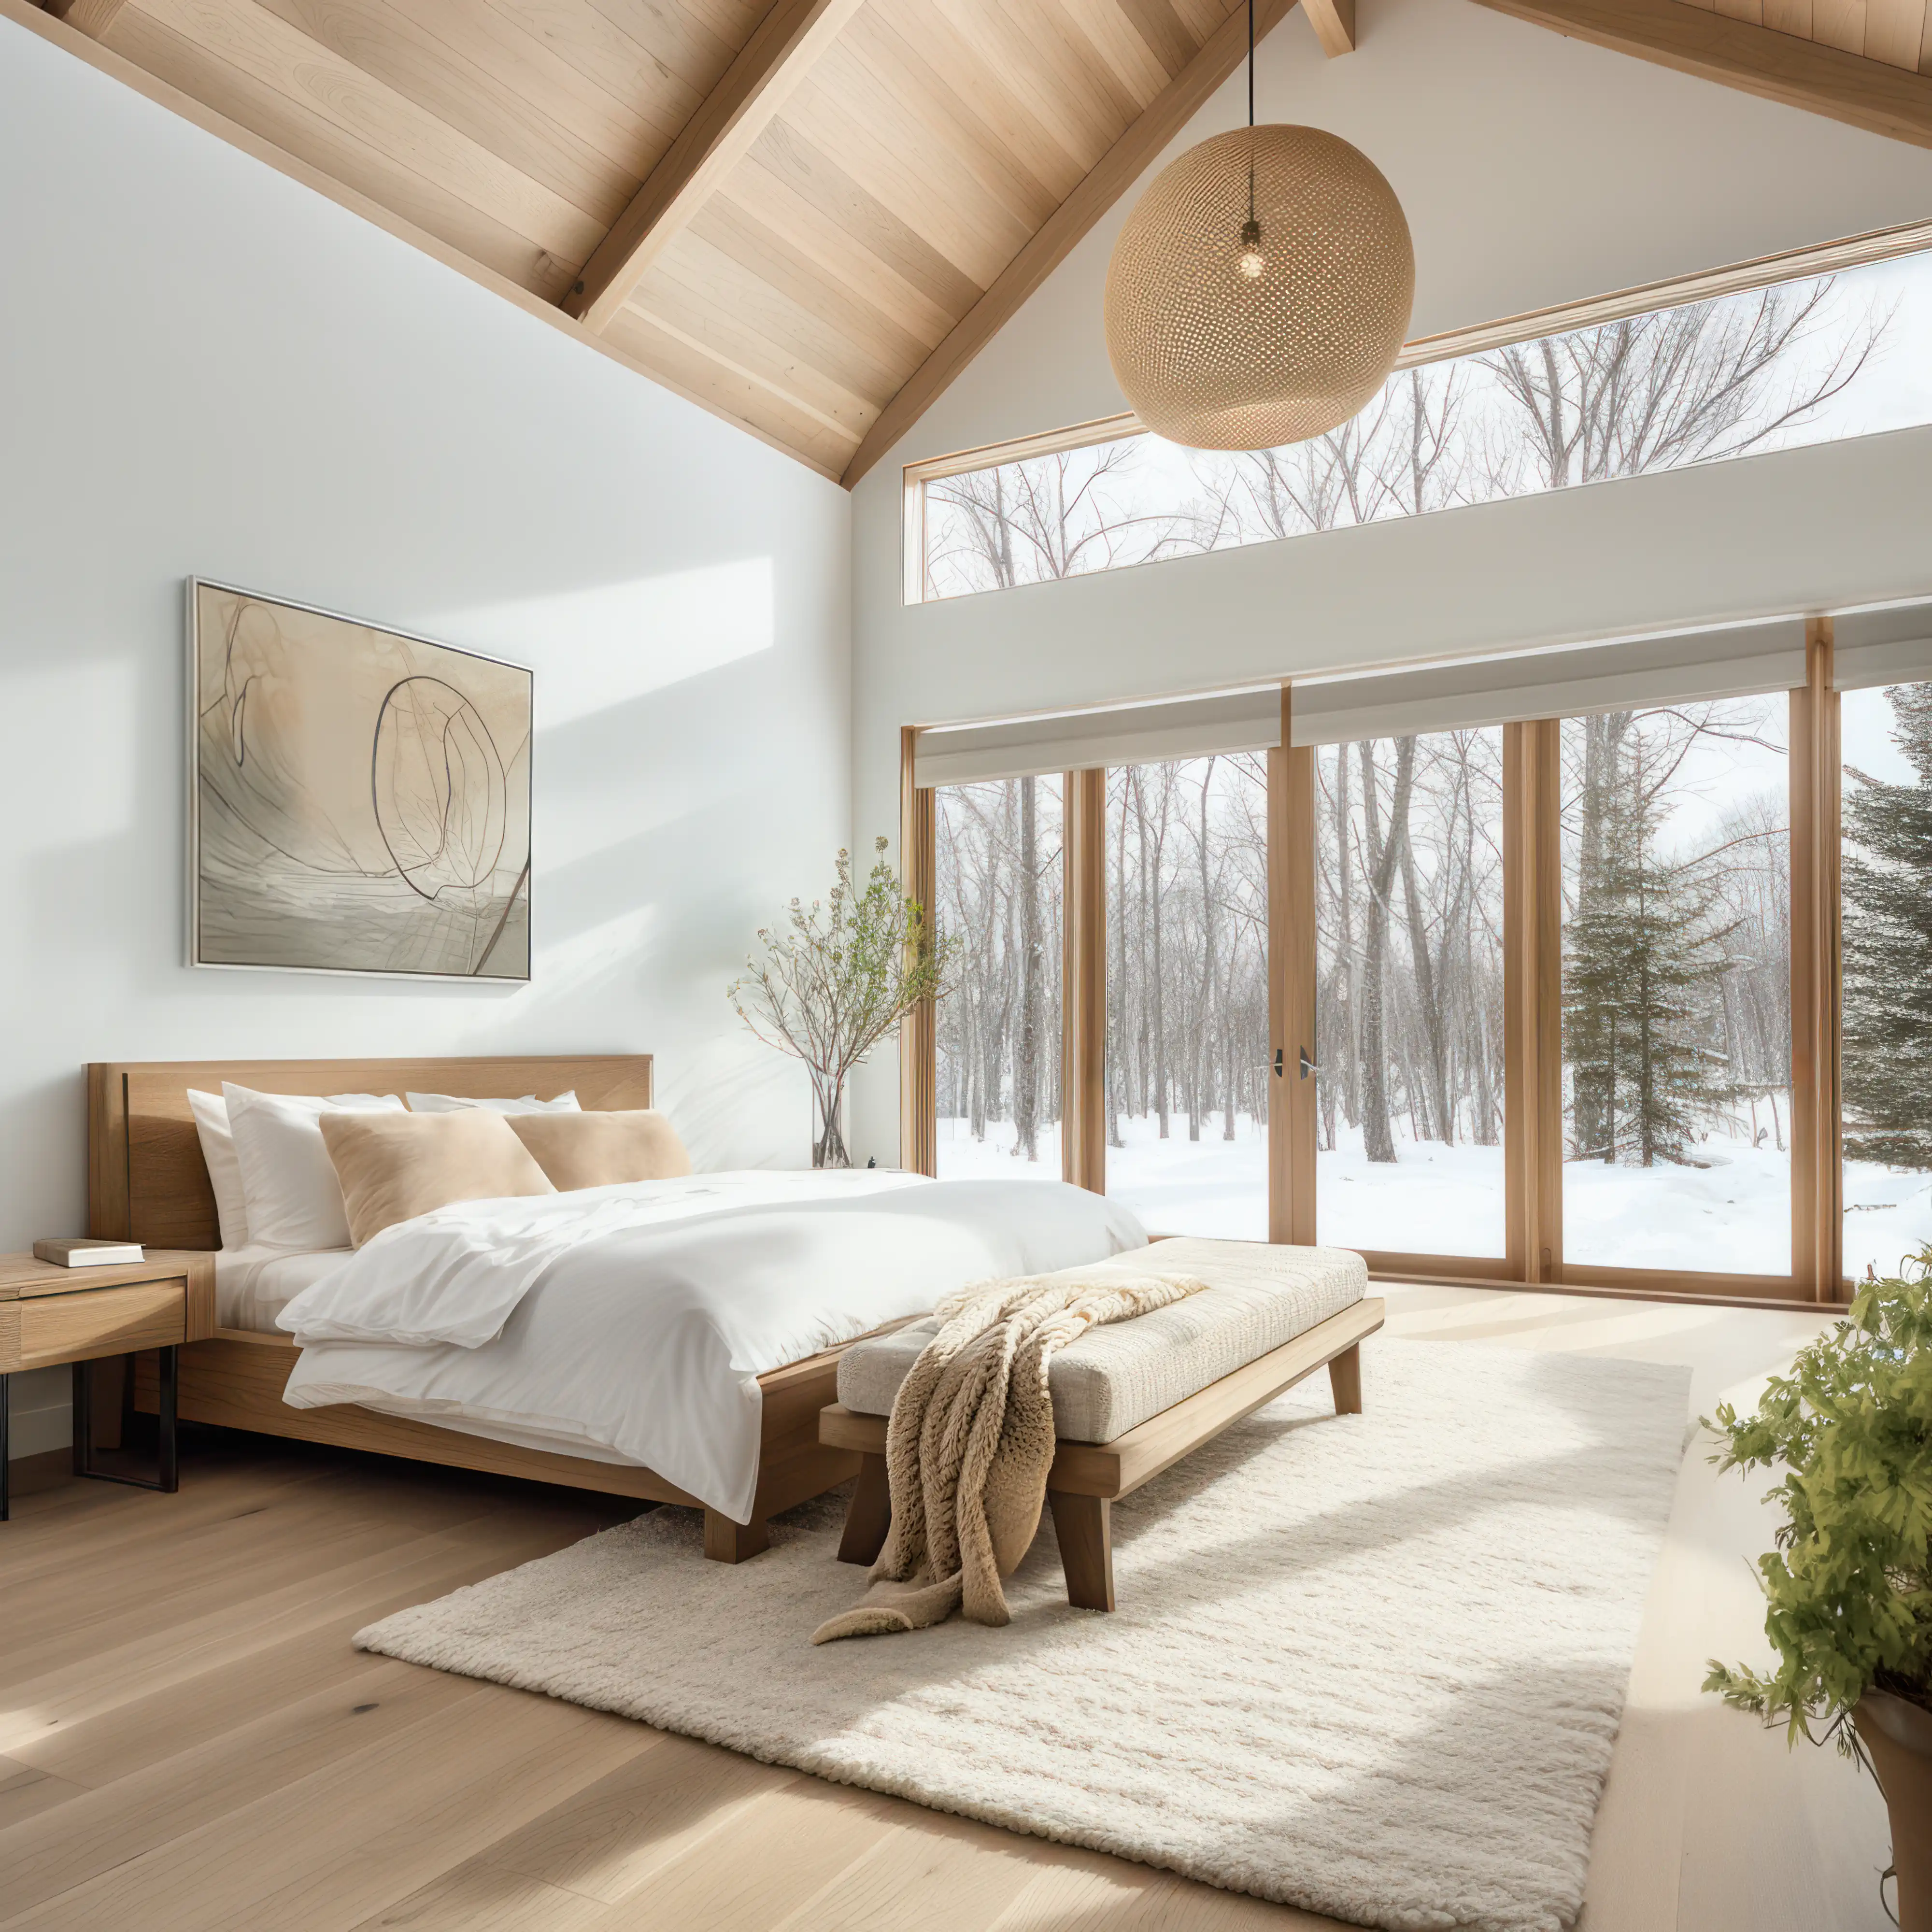 Chambre moderne spacieuse avec des accents en bois donnant sur une forêt enneigée, intérieur signé Sarah Brown Design